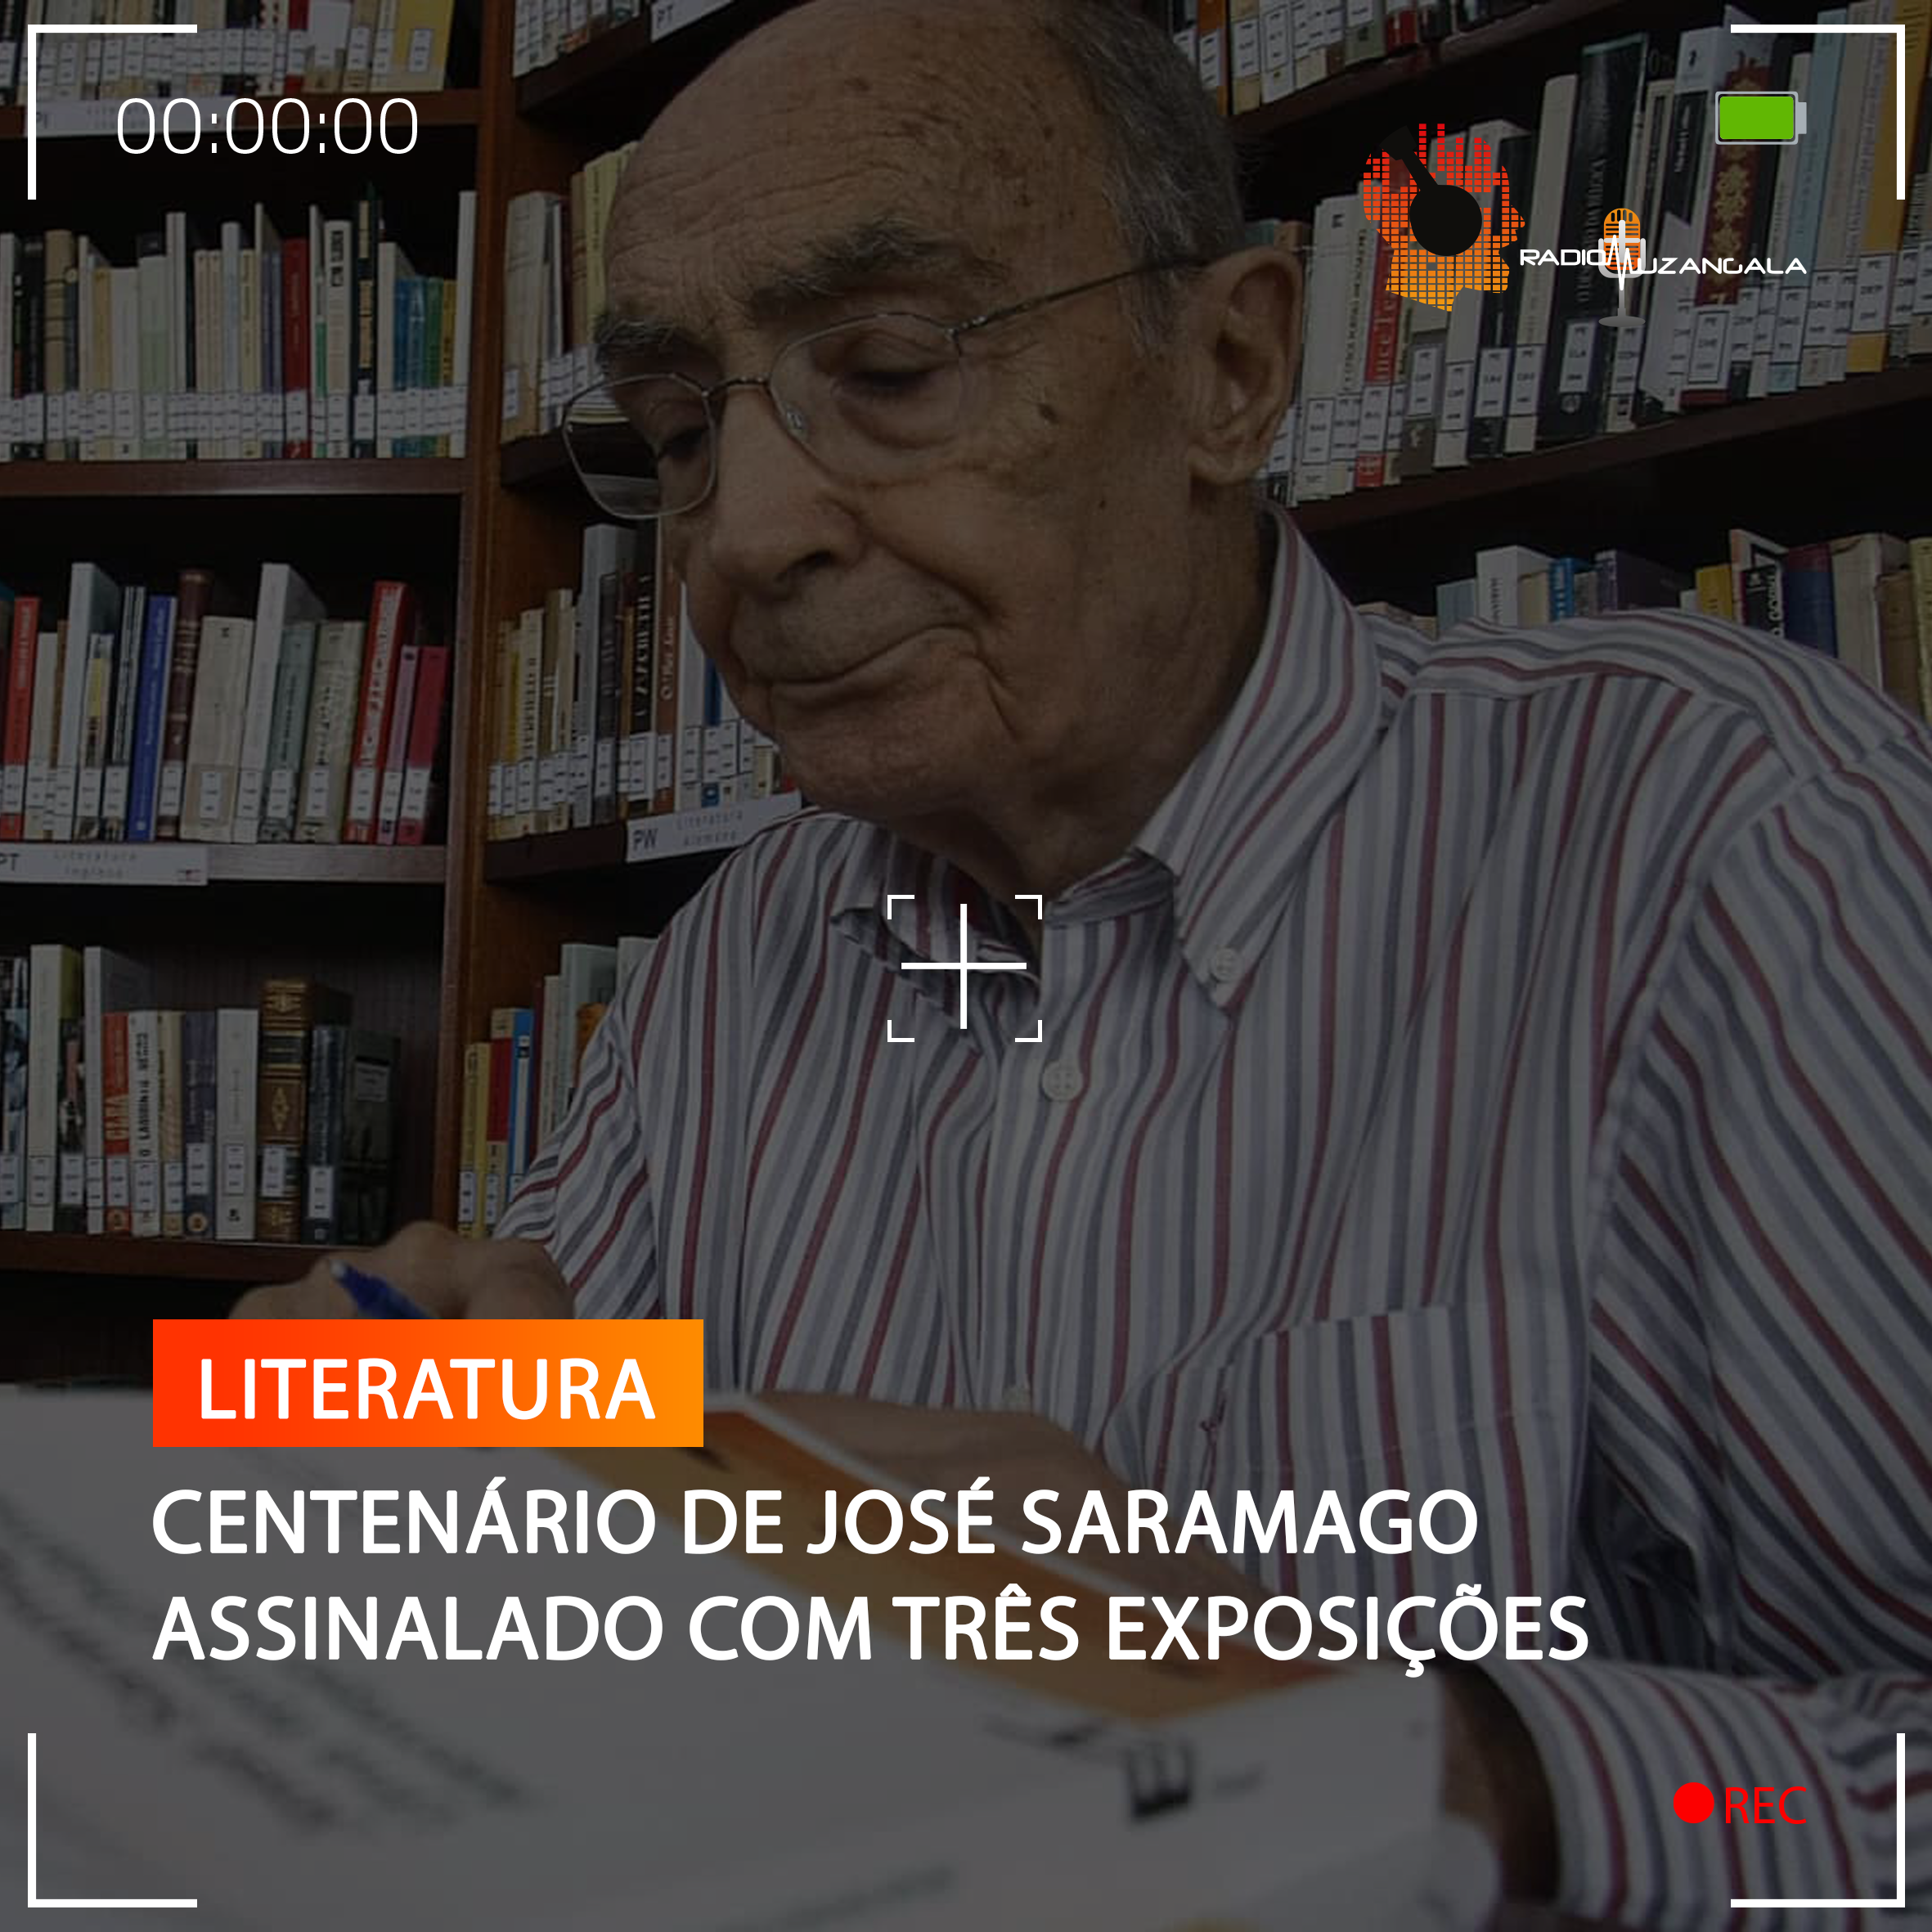  CENTENÁRIO DE JOSÉ SARAMAGO ASSINALADO COM TRÊS EXPOSIÇÕES